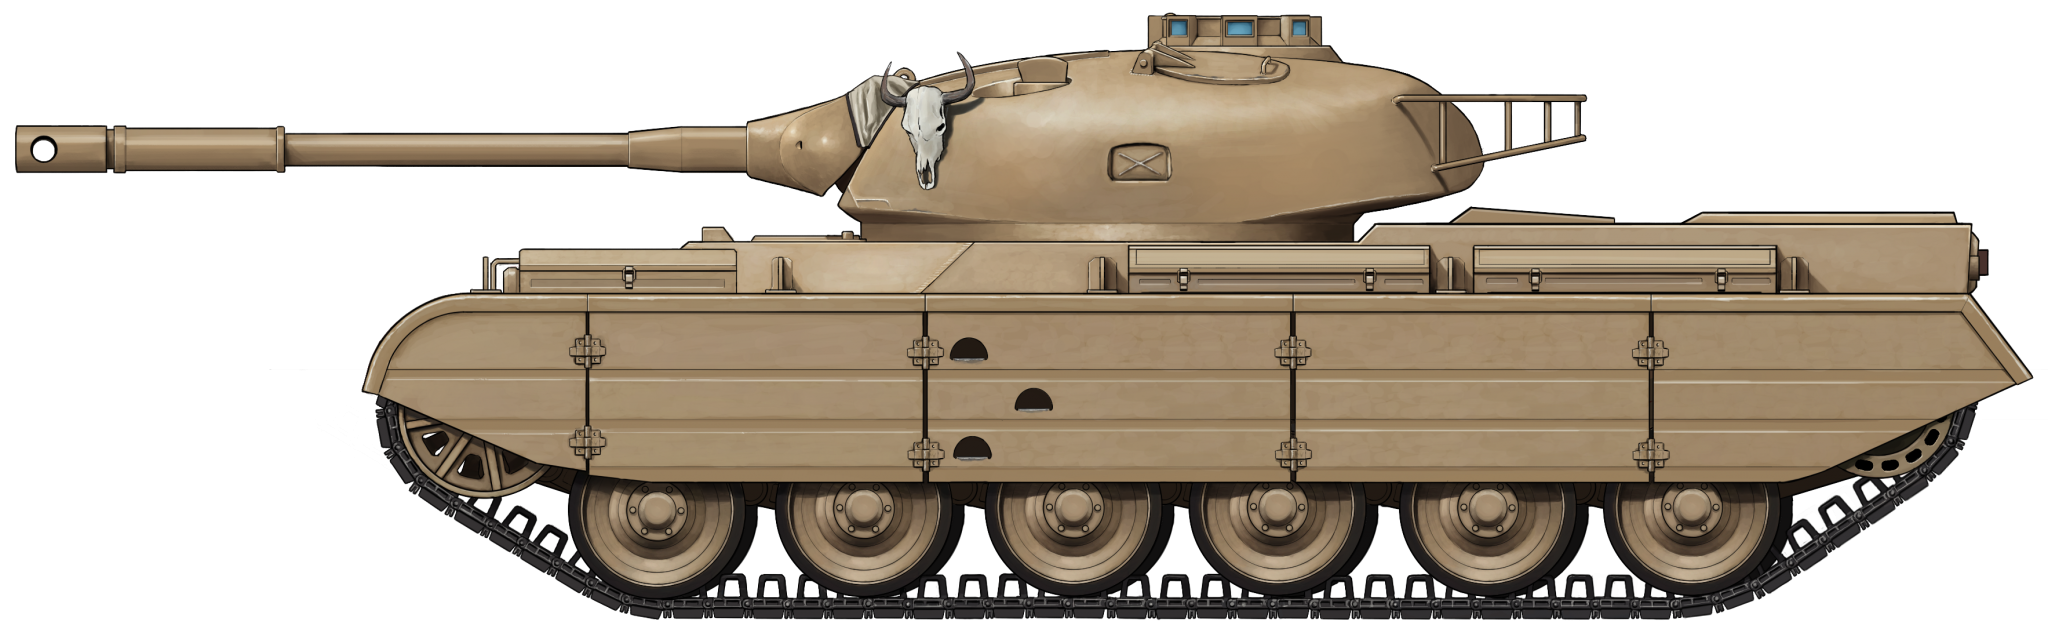 Польские танки вид сбоку. Танк т 46 сбоку. Йох танк вид сбоку. Progetto 46 вид сбоку.